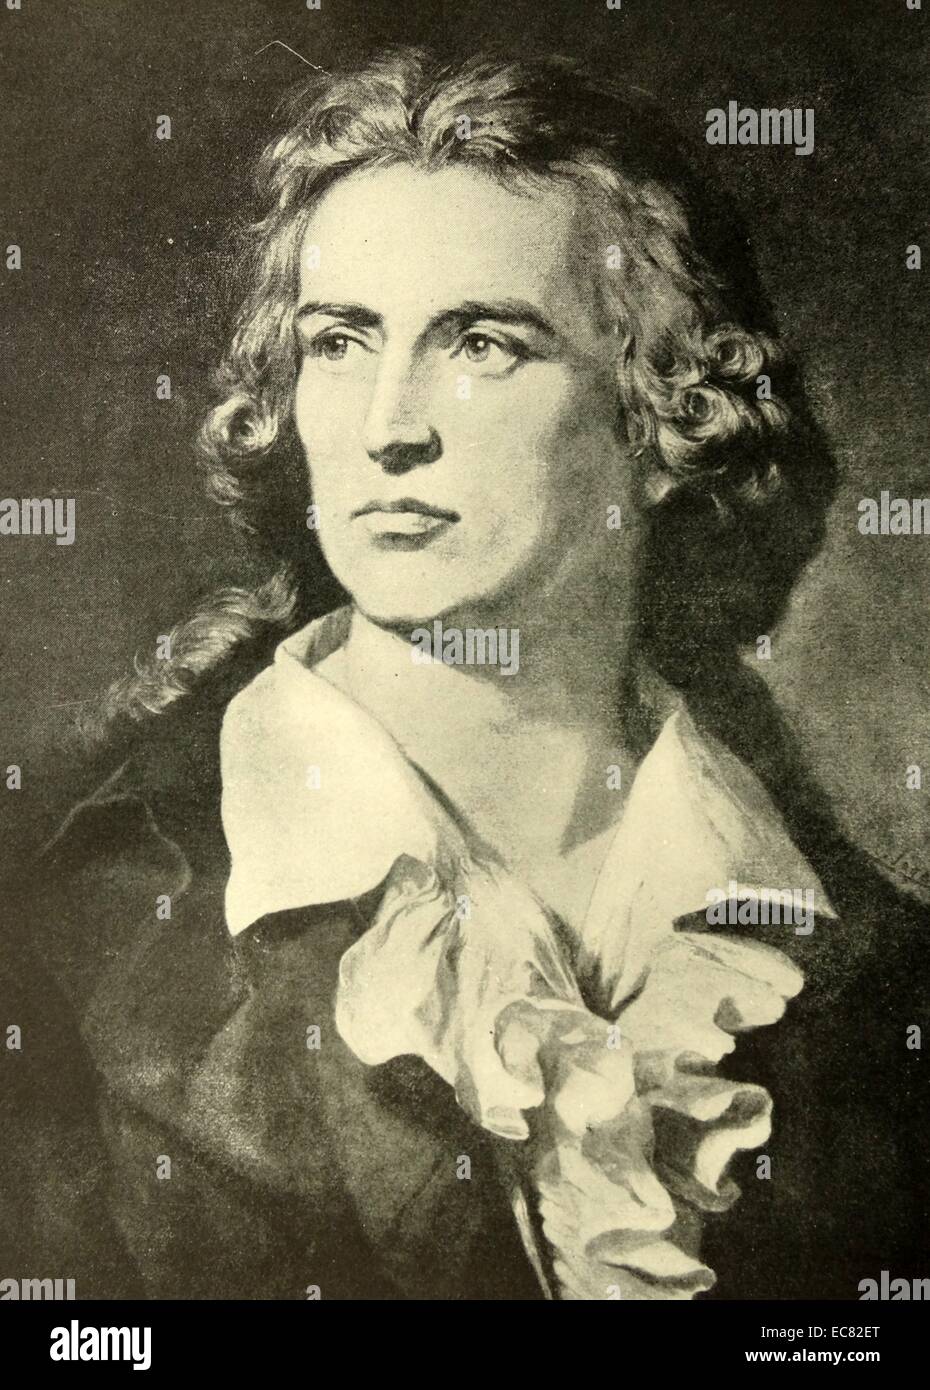 Porträt von Friedrich Schiller (1759-1805), deutscher Dichter, Philosoph, Historiker und Dramatiker. Datierte 1793 Stockfoto